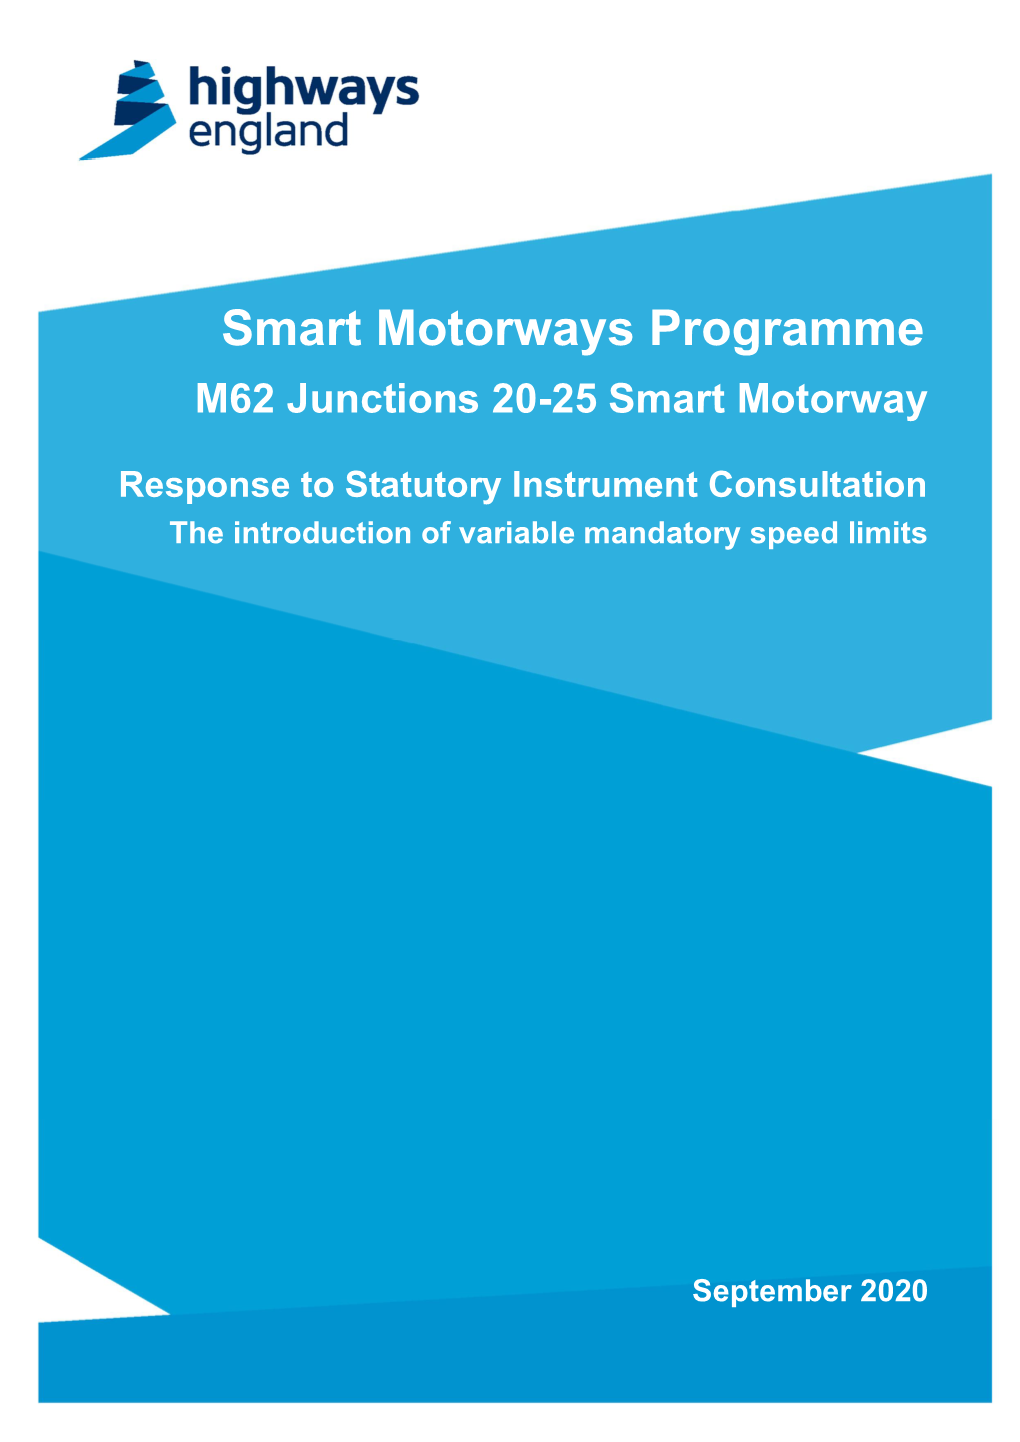 M62 Junctions 20-25 Smart Motorway